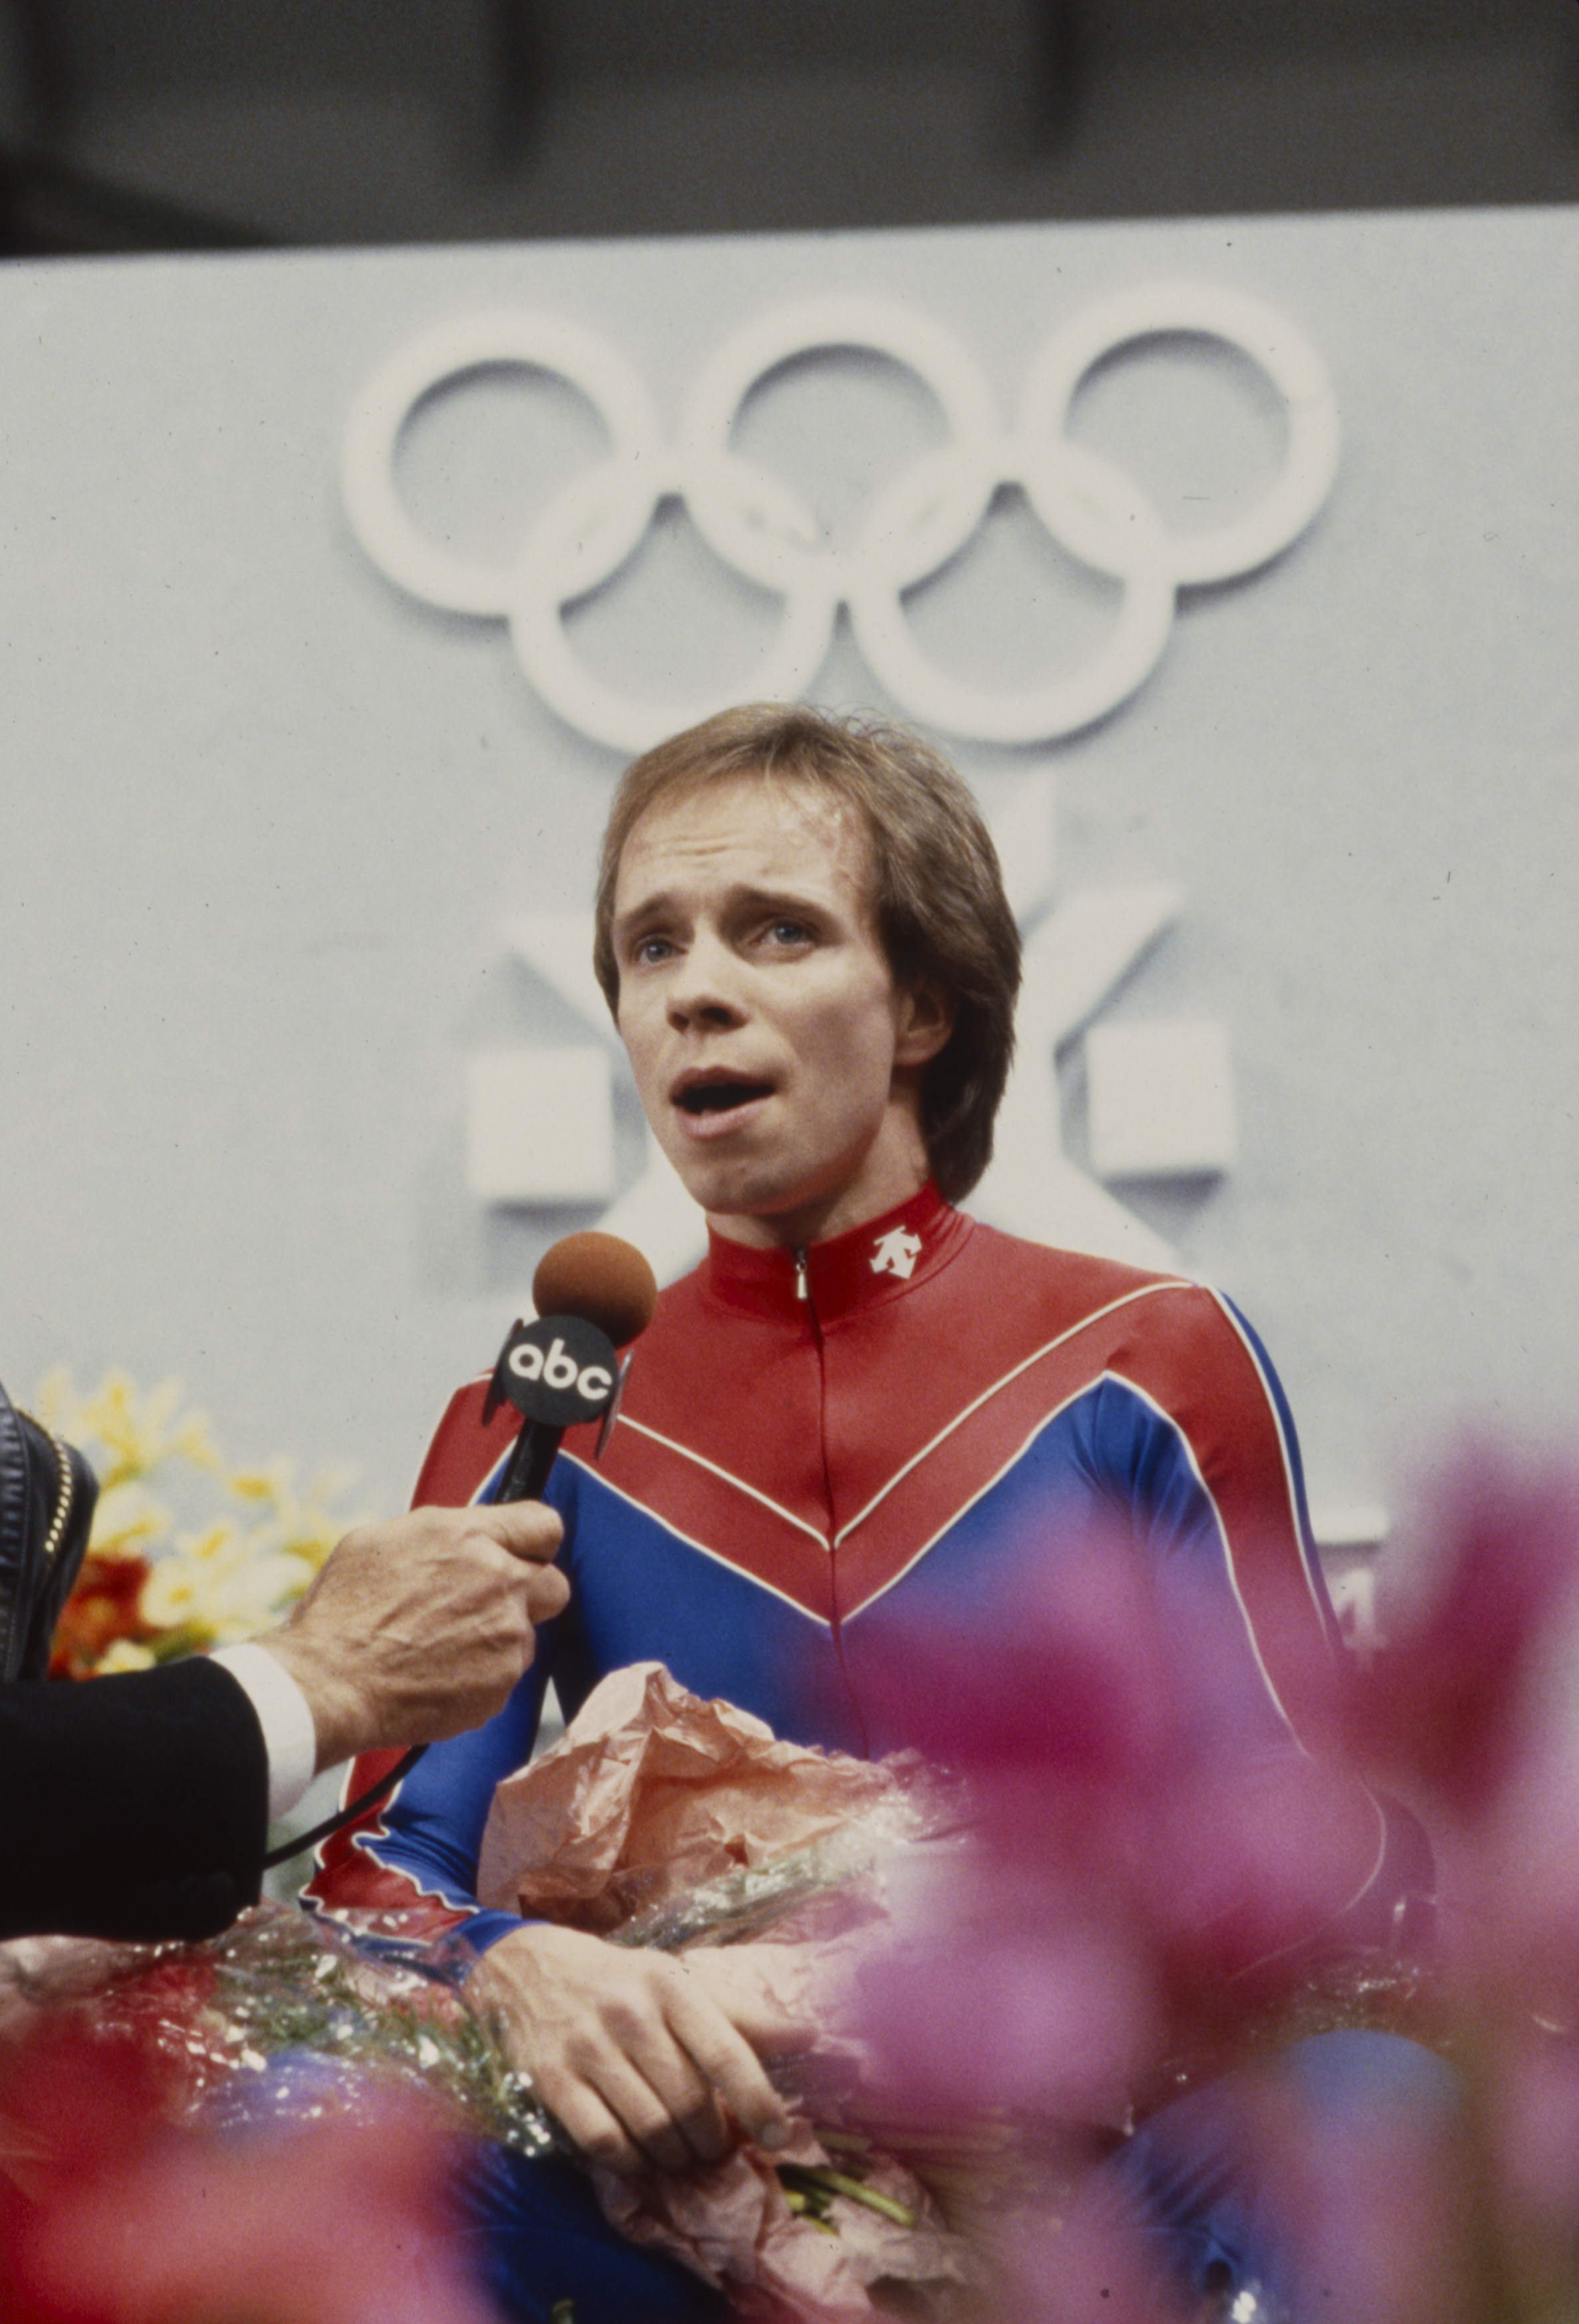 Scott Hamilton après avoir participé à l'épreuve masculine de patinage artistique aux Jeux olympiques d'hiver de 1984 / XIVe Jeux olympiques d'hiver le 1er février 1984 | Source : Getty Images